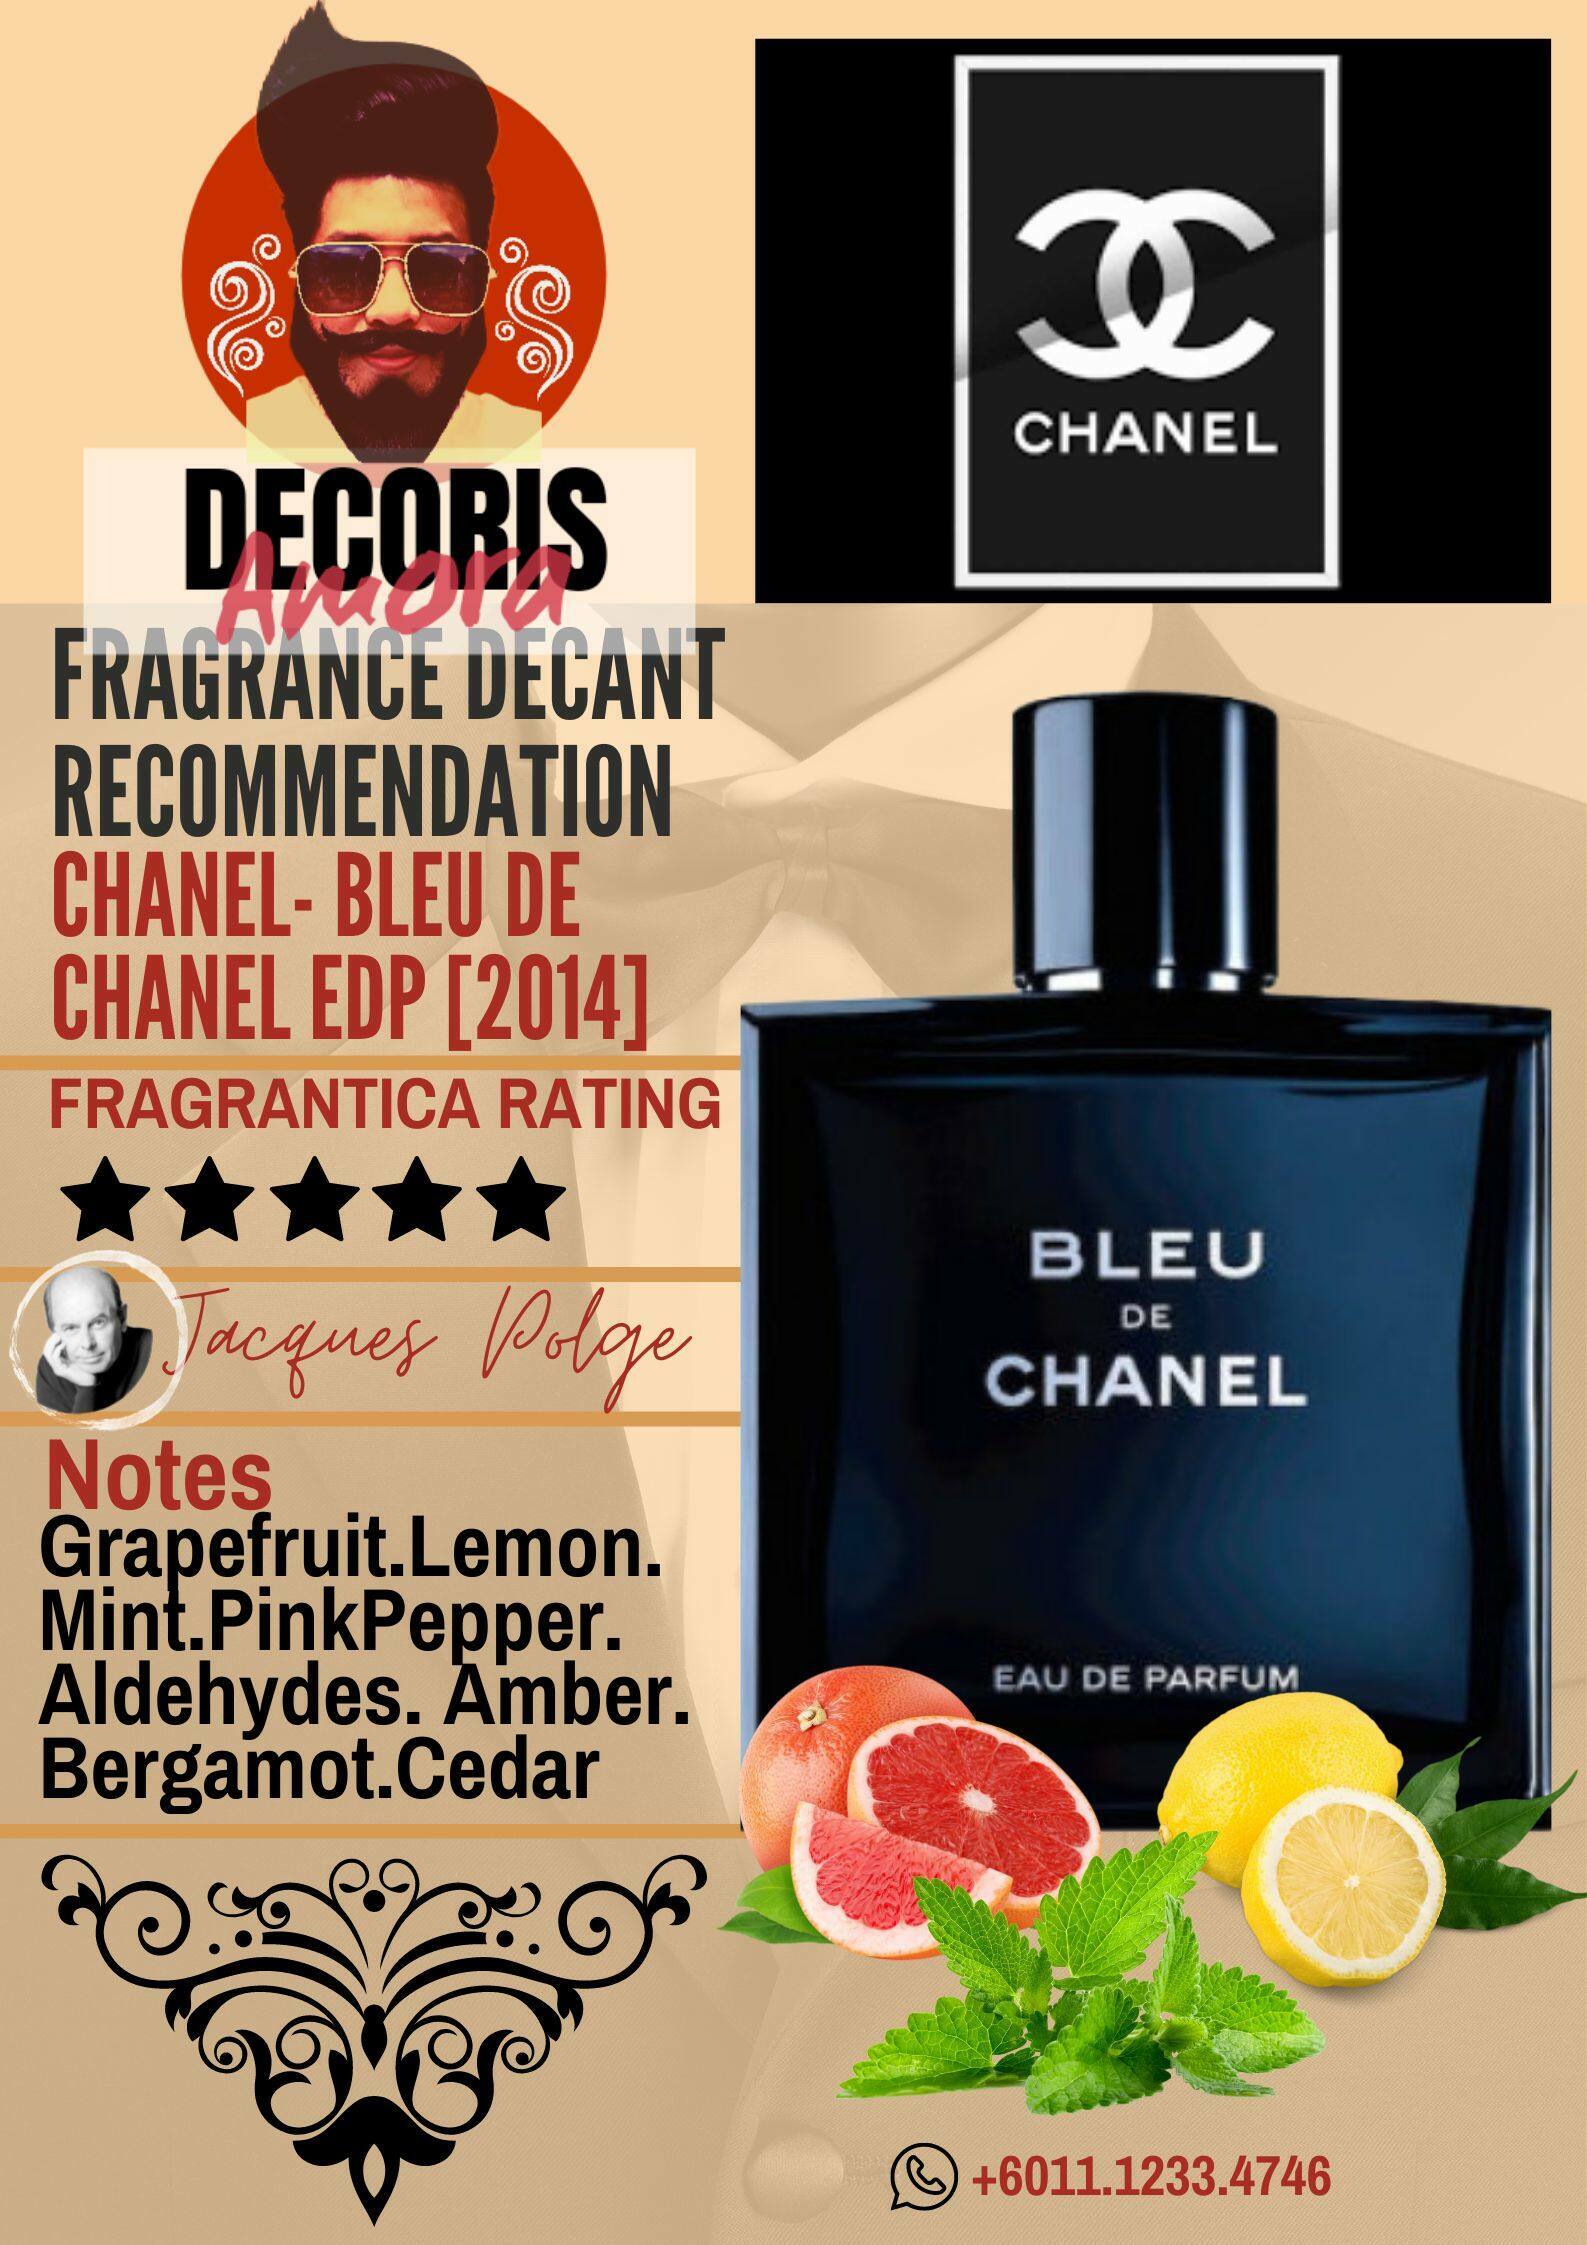 Chanel Bleu de Chanel Eau de Parfum - Perfume Decant – Decoris Amora Decant